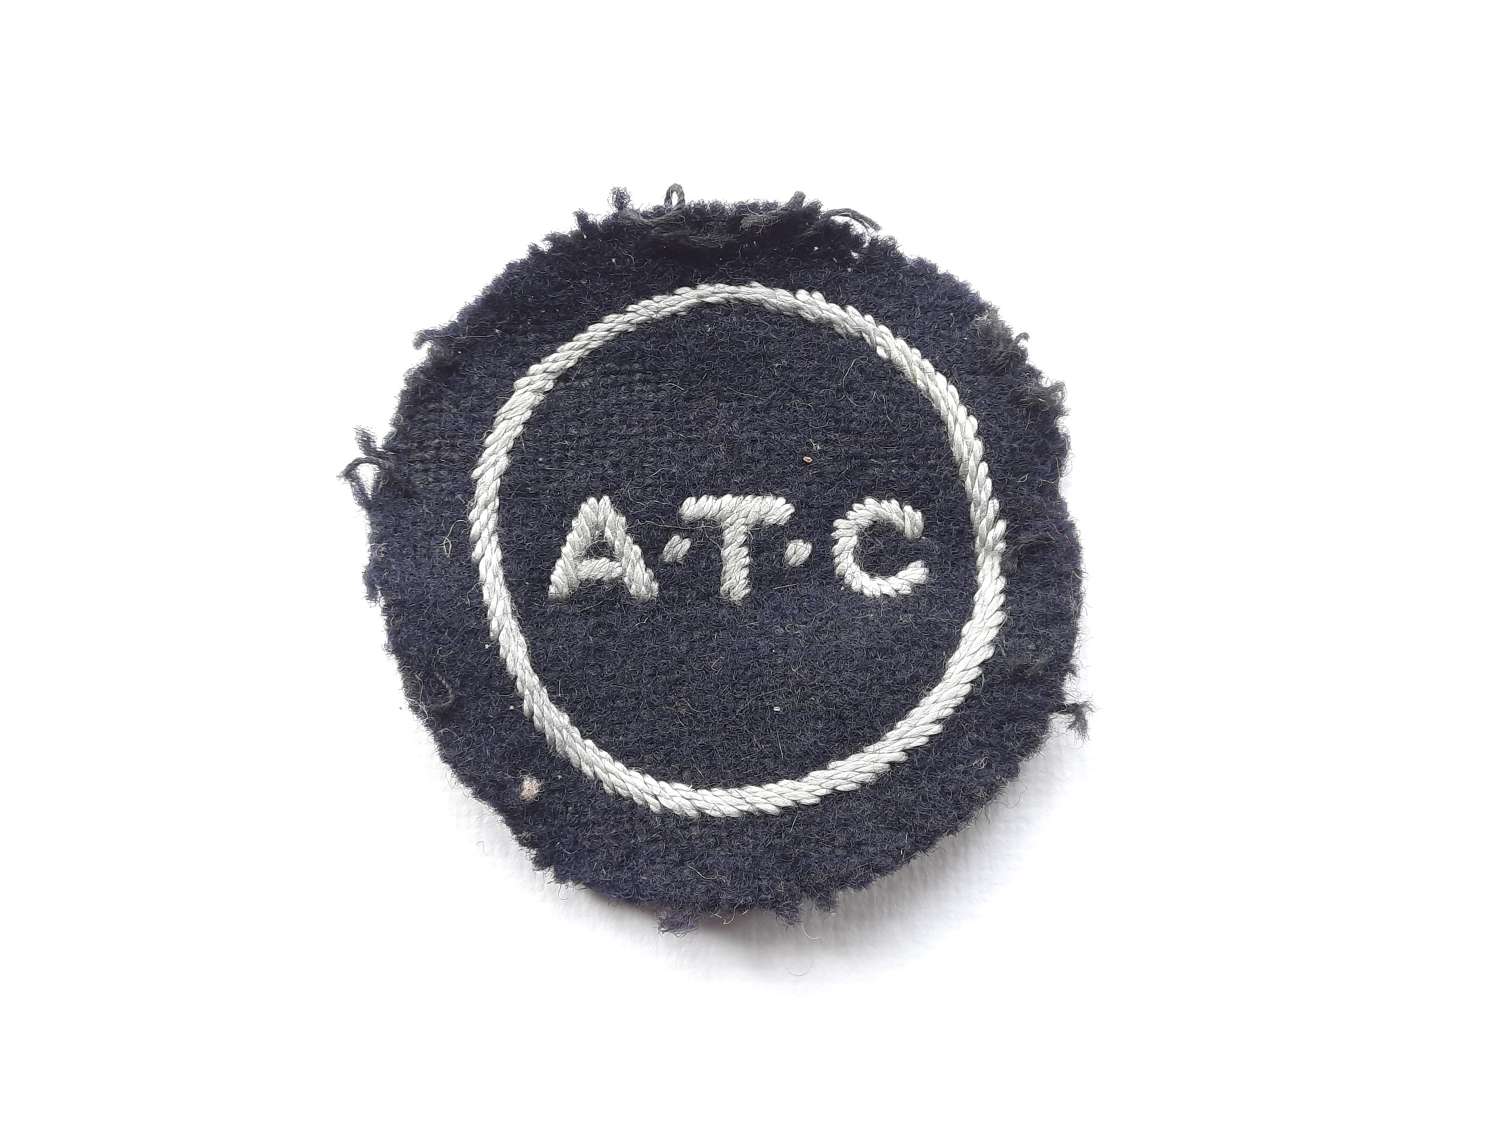 WW2 ATC Patch